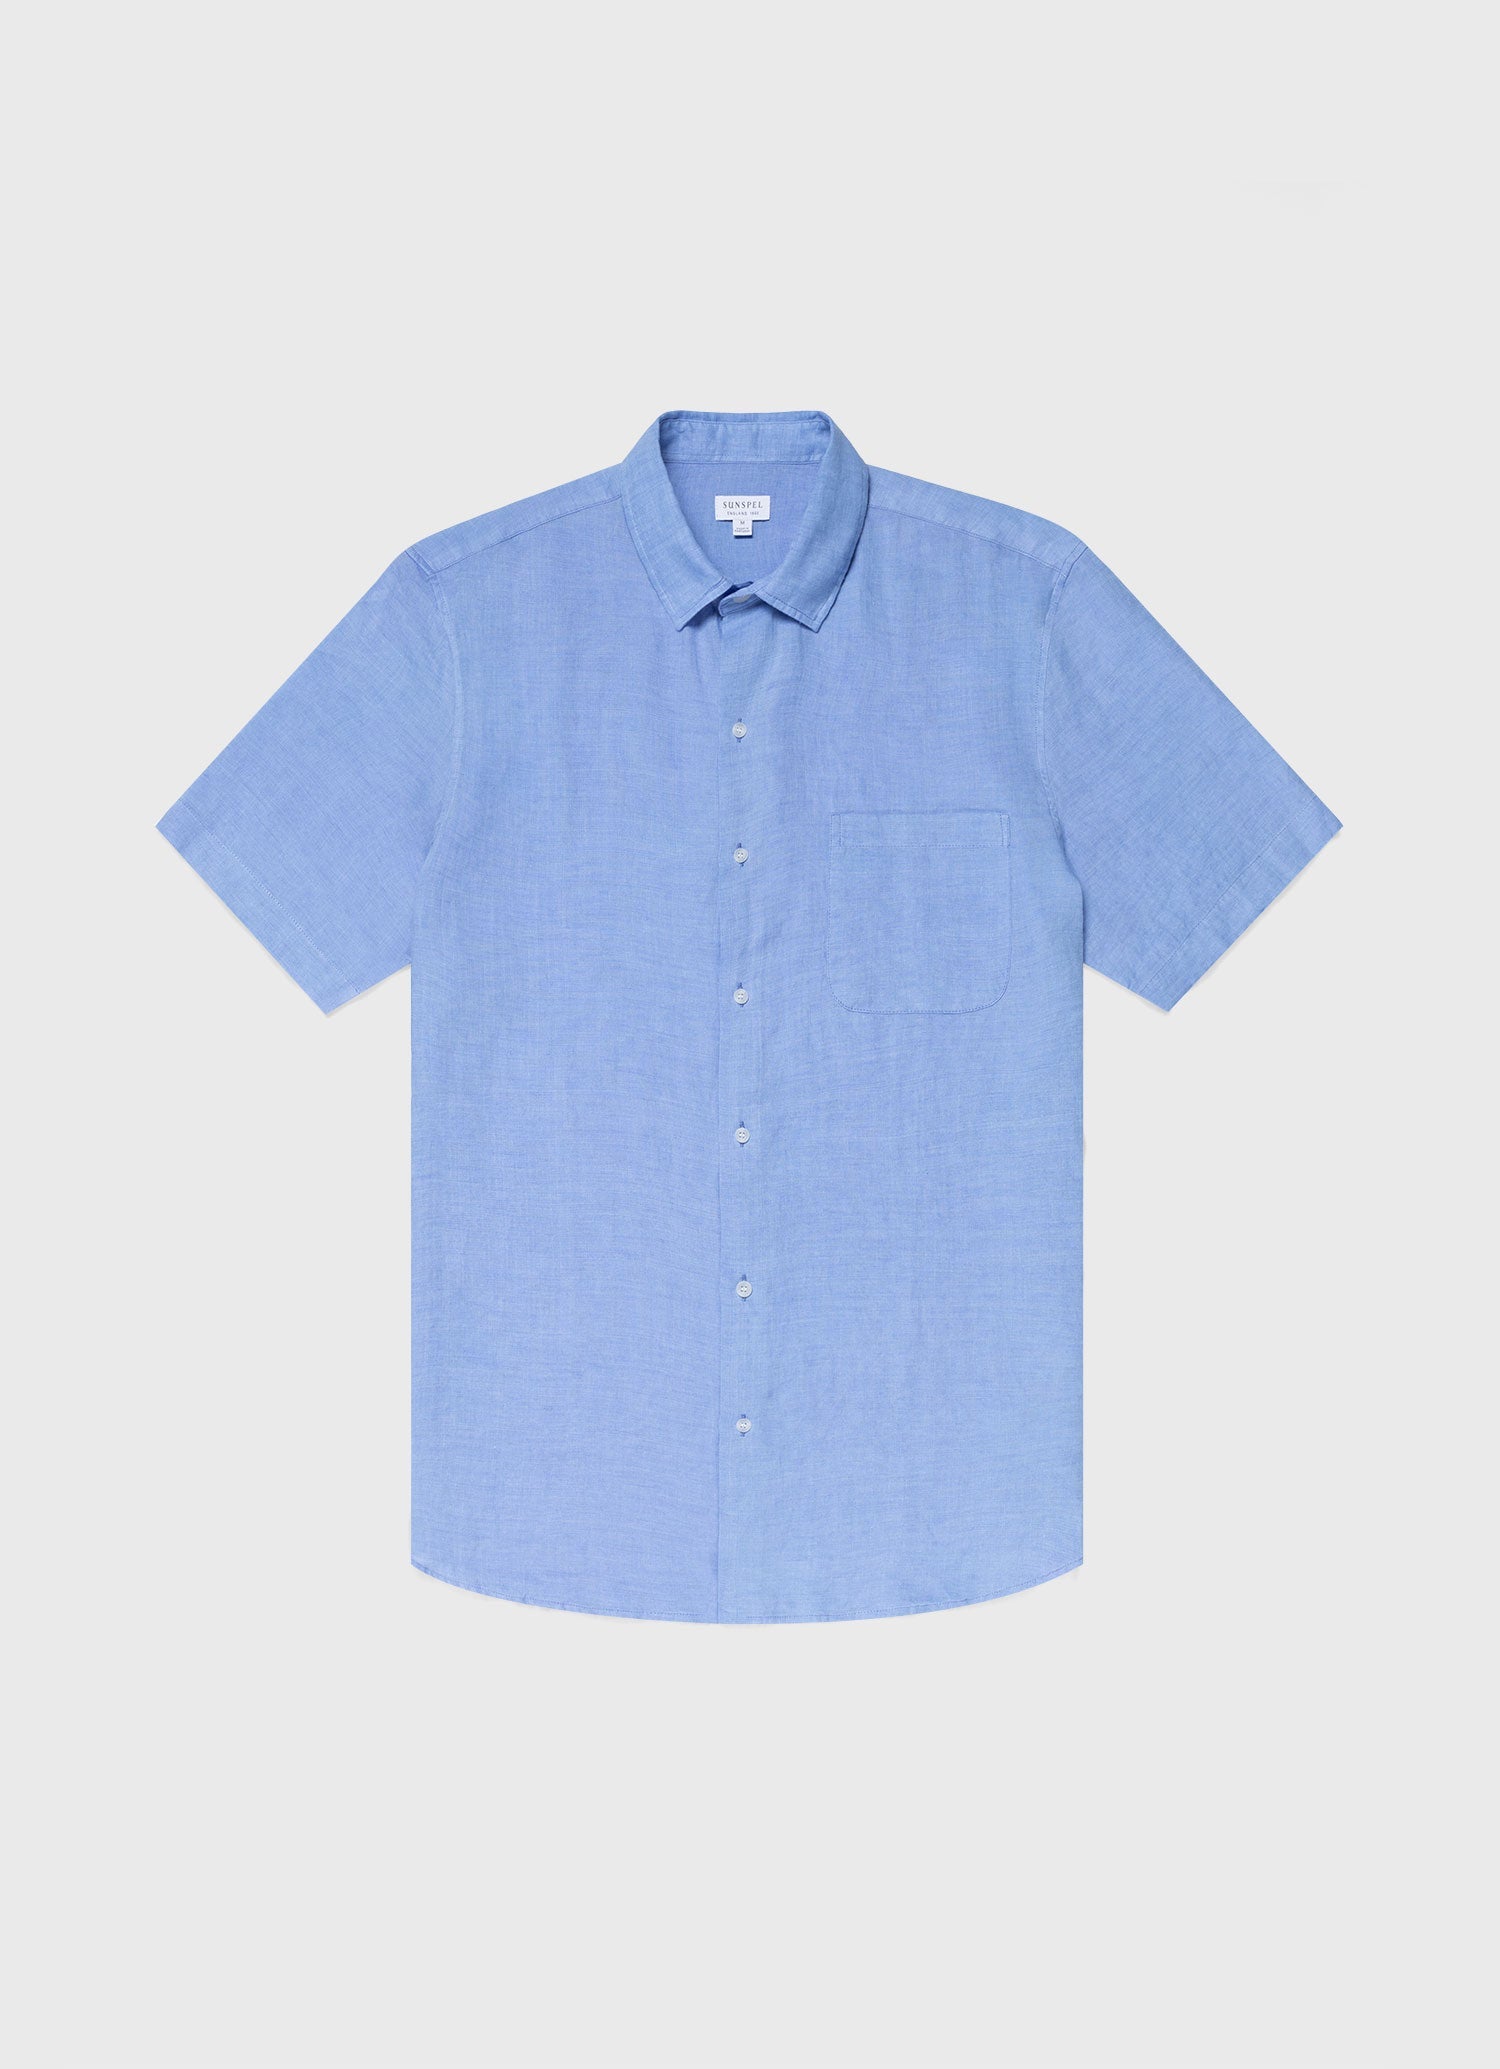 Men's Short Sleeve Linen Shirt in Cool Blue